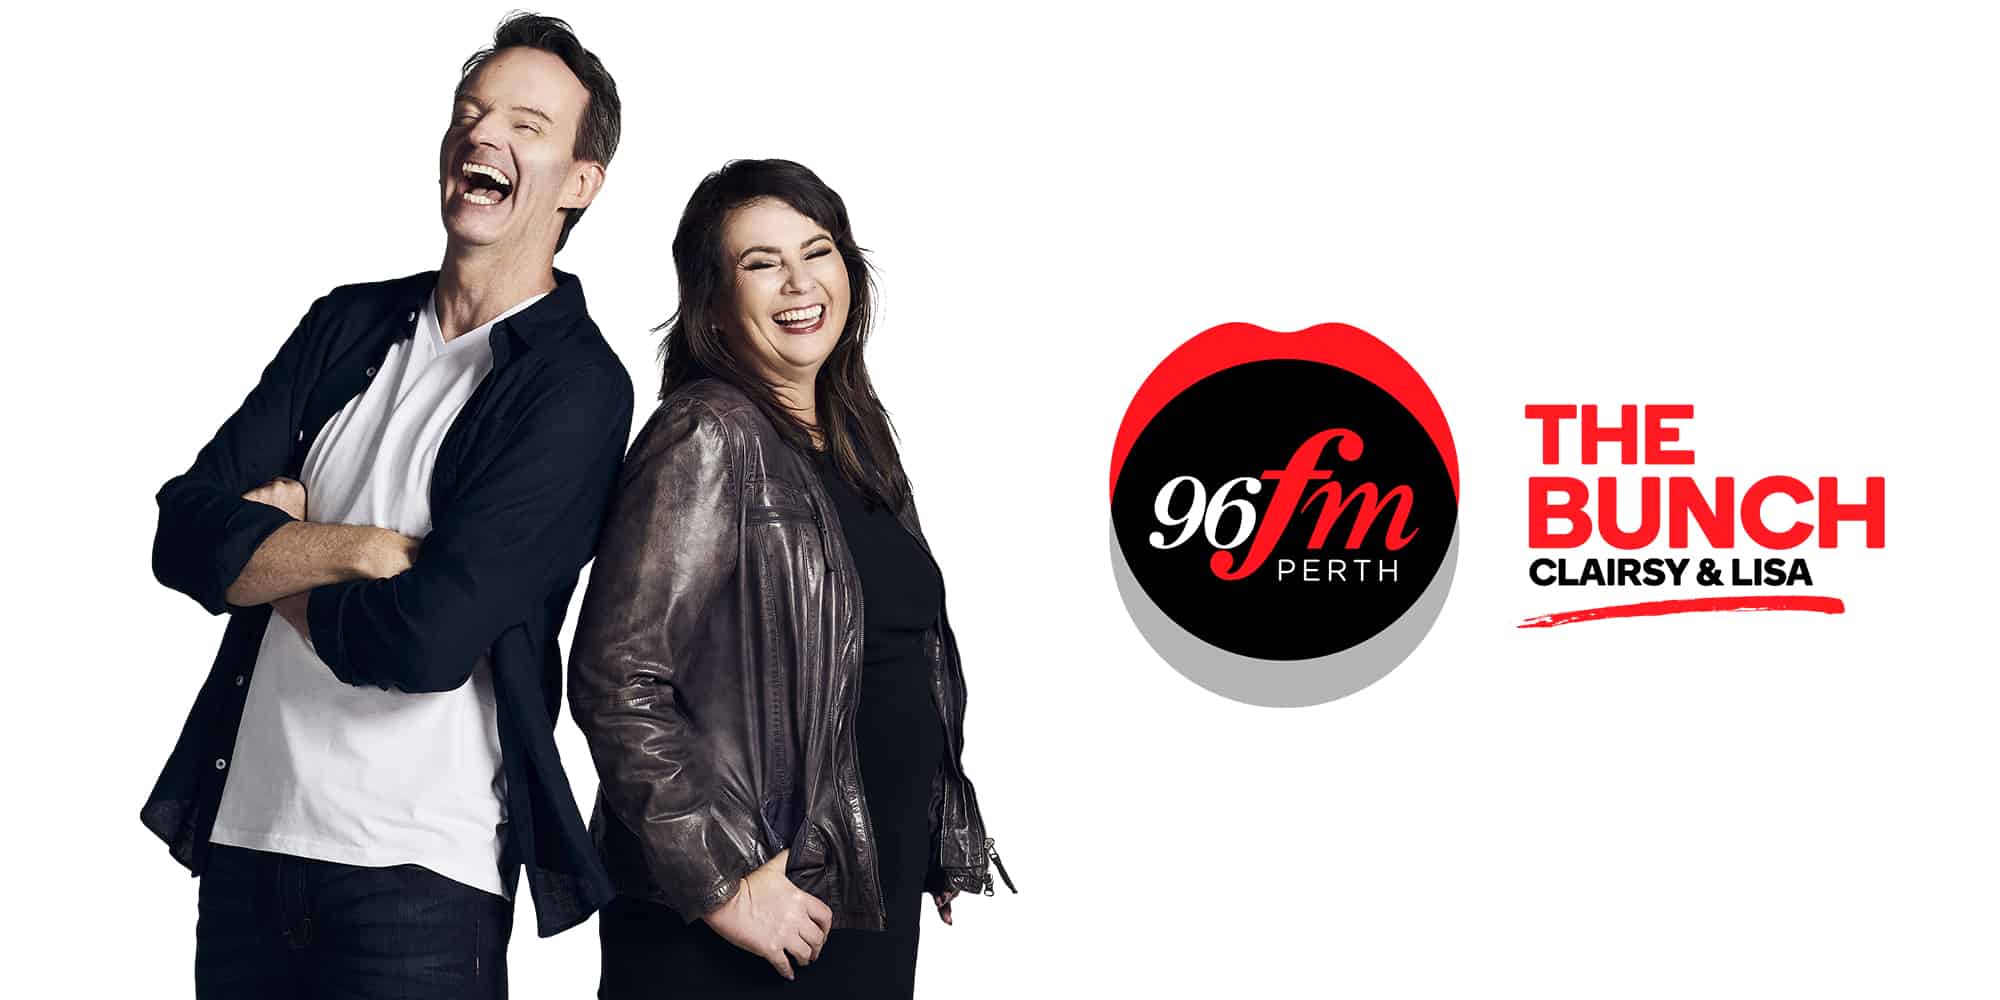 Perth radio ratings